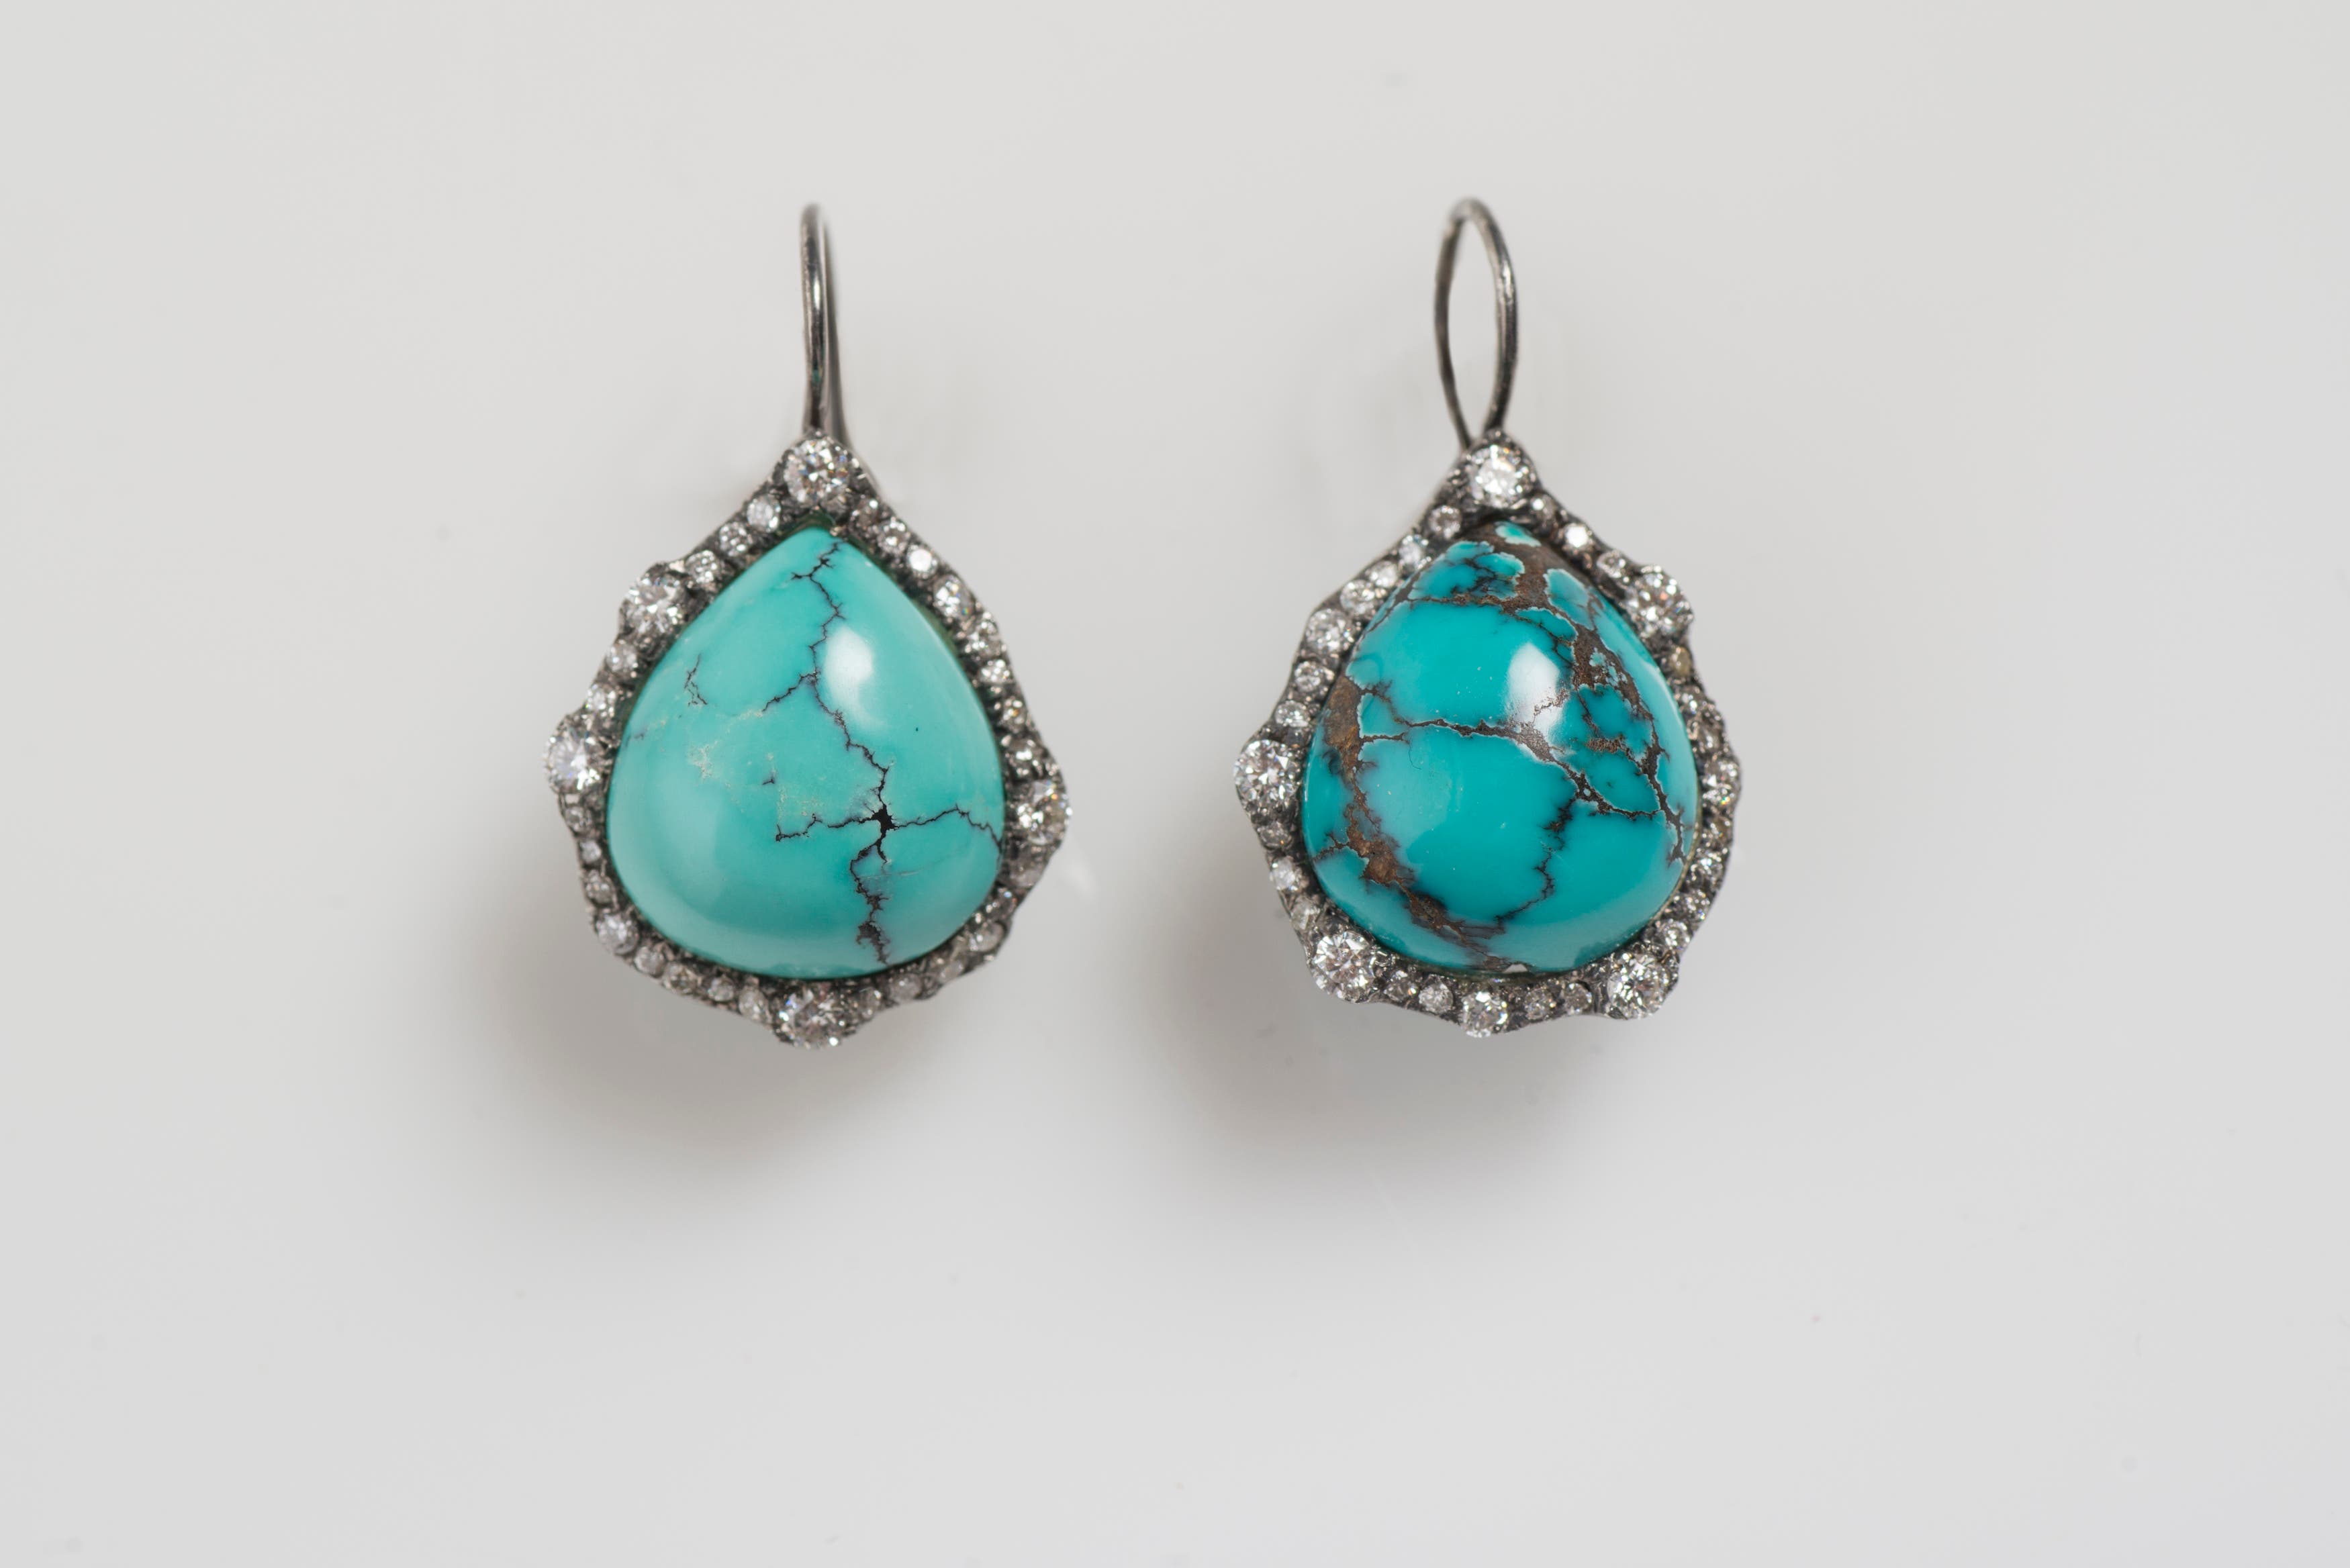 Turquoise Earrings with Diamonds image